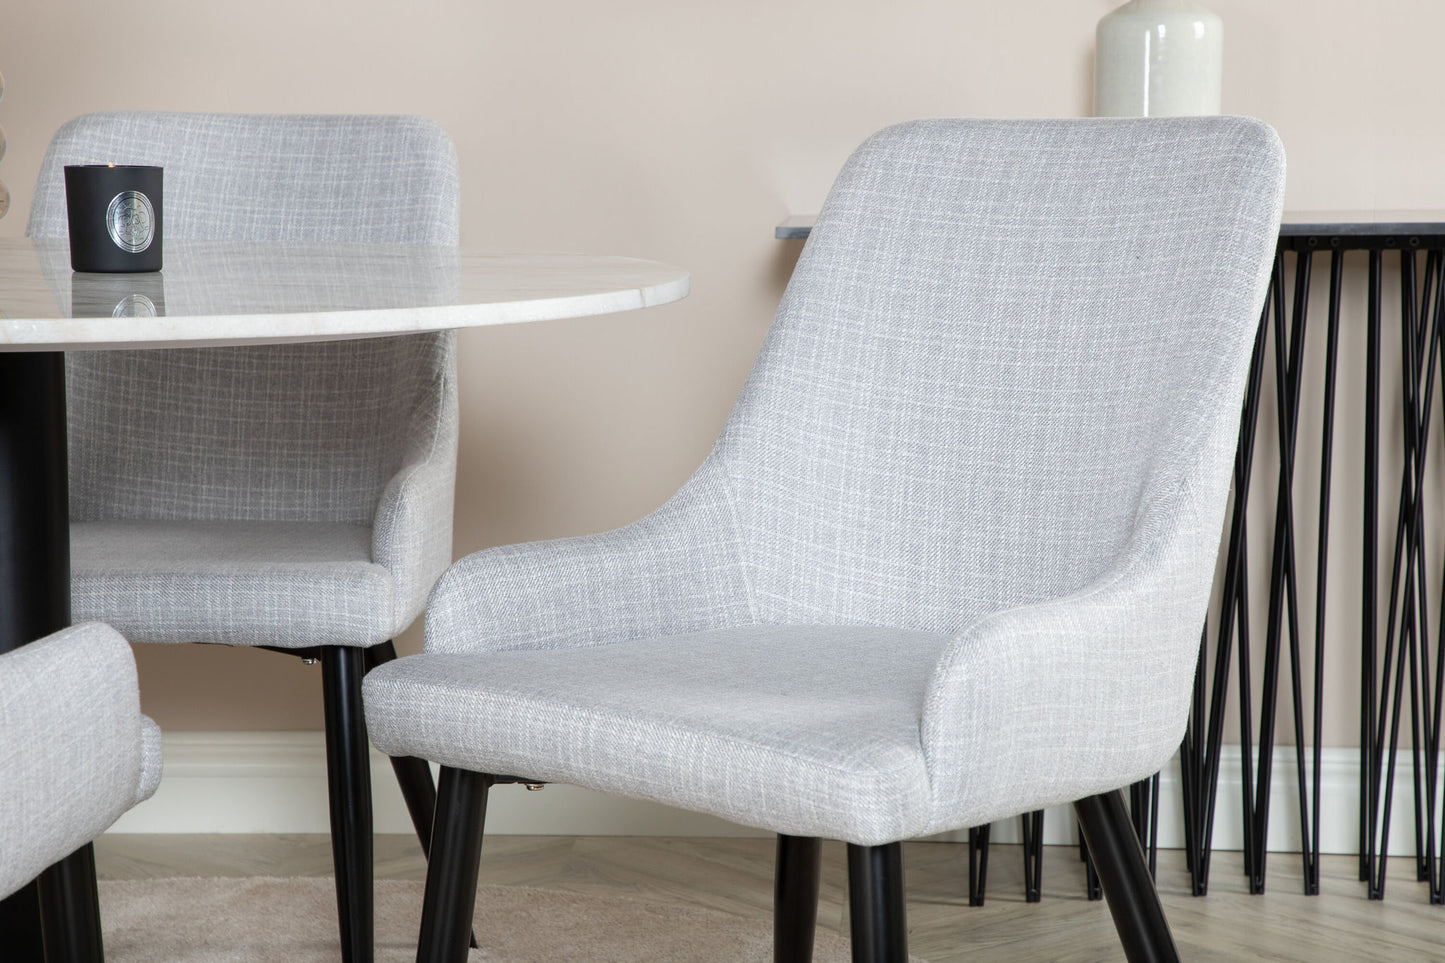 Estelle - Rundt spisebord, ø106 H75 - Hvid / Sort+ Plaza stol - Sorte ben - Lysegråt stof